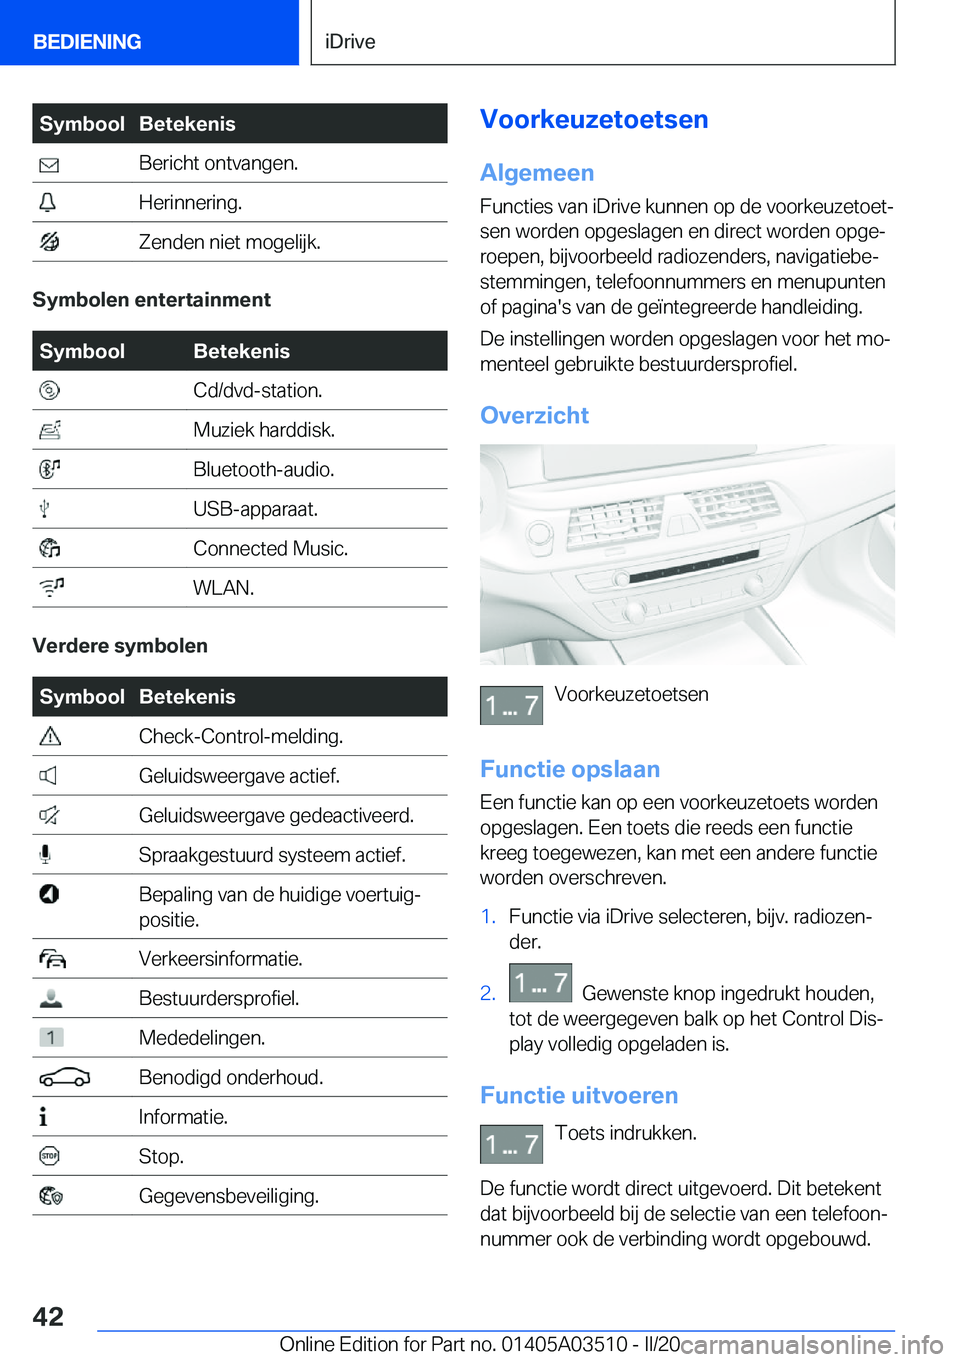 BMW X3 2020  Instructieboekjes (in Dutch) �S�y�m�b�o�o�l�B�e�t�e�k�e�n�i�s��B�e�r�i�c�h�t��o�n�t�v�a�n�g�e�n�.��H�e�r�i�n�n�e�r�i�n�g�.��Z�e�n�d�e�n��n�i�e�t��m�o�g�e�l�i�j�k�.
�S�y�m�b�o�l�e�n��e�n�t�e�r�t�a�i�n�m�e�n�t
�S�y�m�b�o�o�l